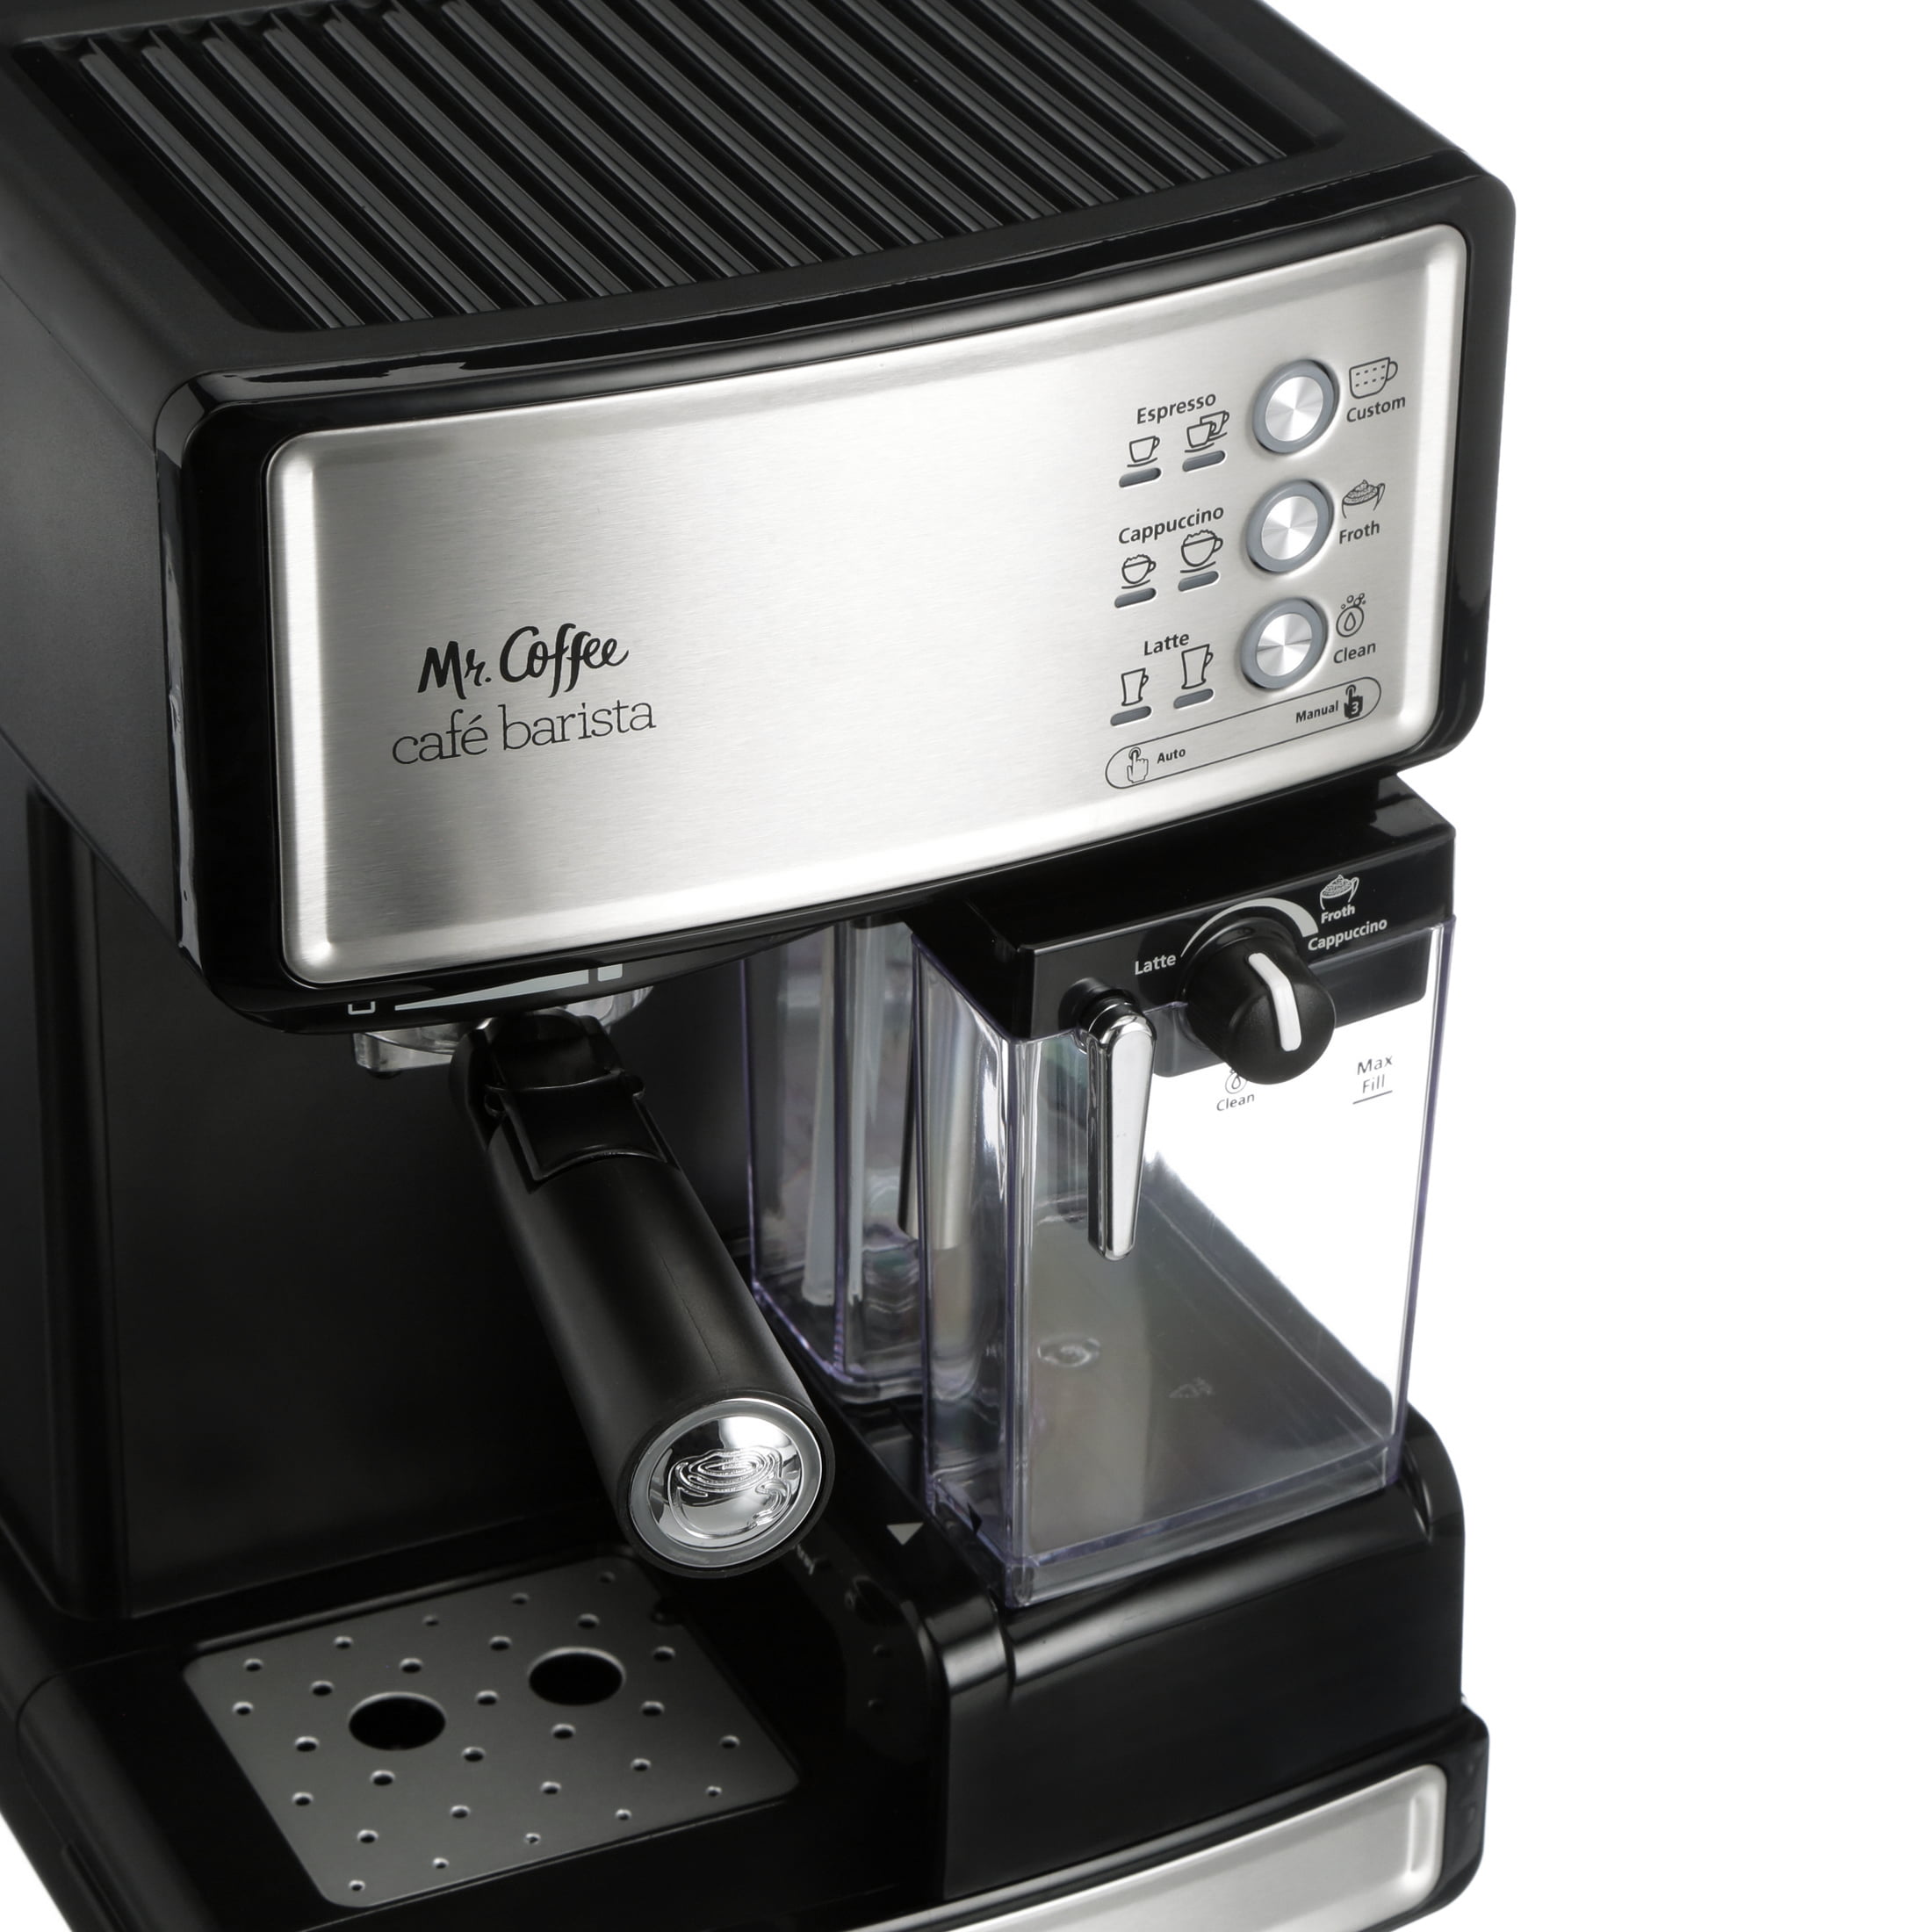 Mr. Coffee New Cafe Barista Black & Silver Premium Espresso/Latte/Cappuccino  Maker